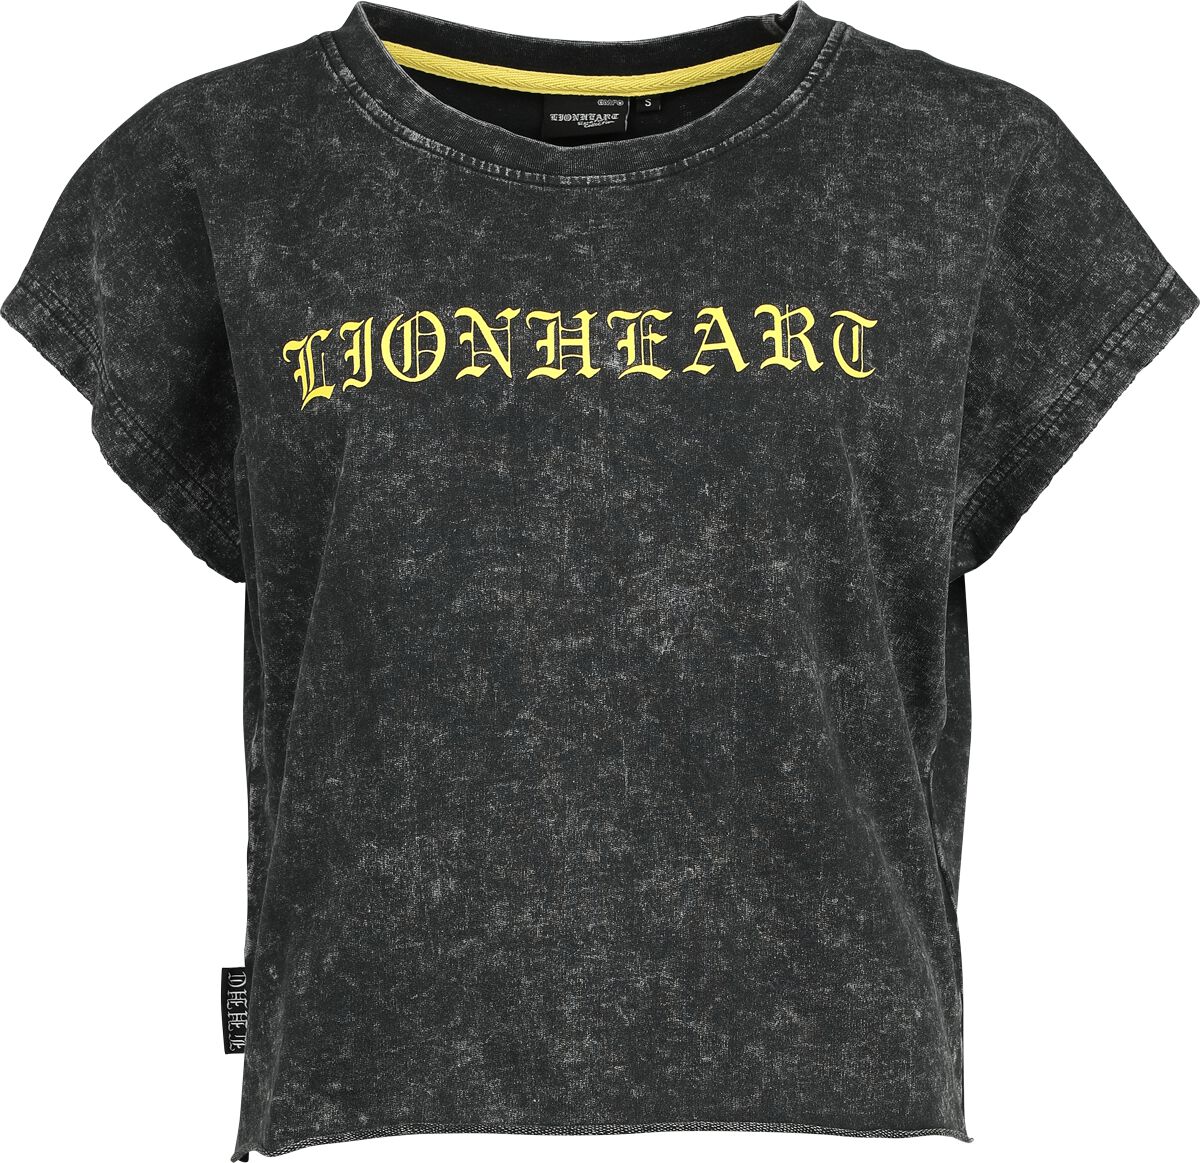 Lionheart T-Shirt - EMP Signature Collection - XS bis 3XL - für Damen - Größe L - grau  - EMP exklusives Merchandise!